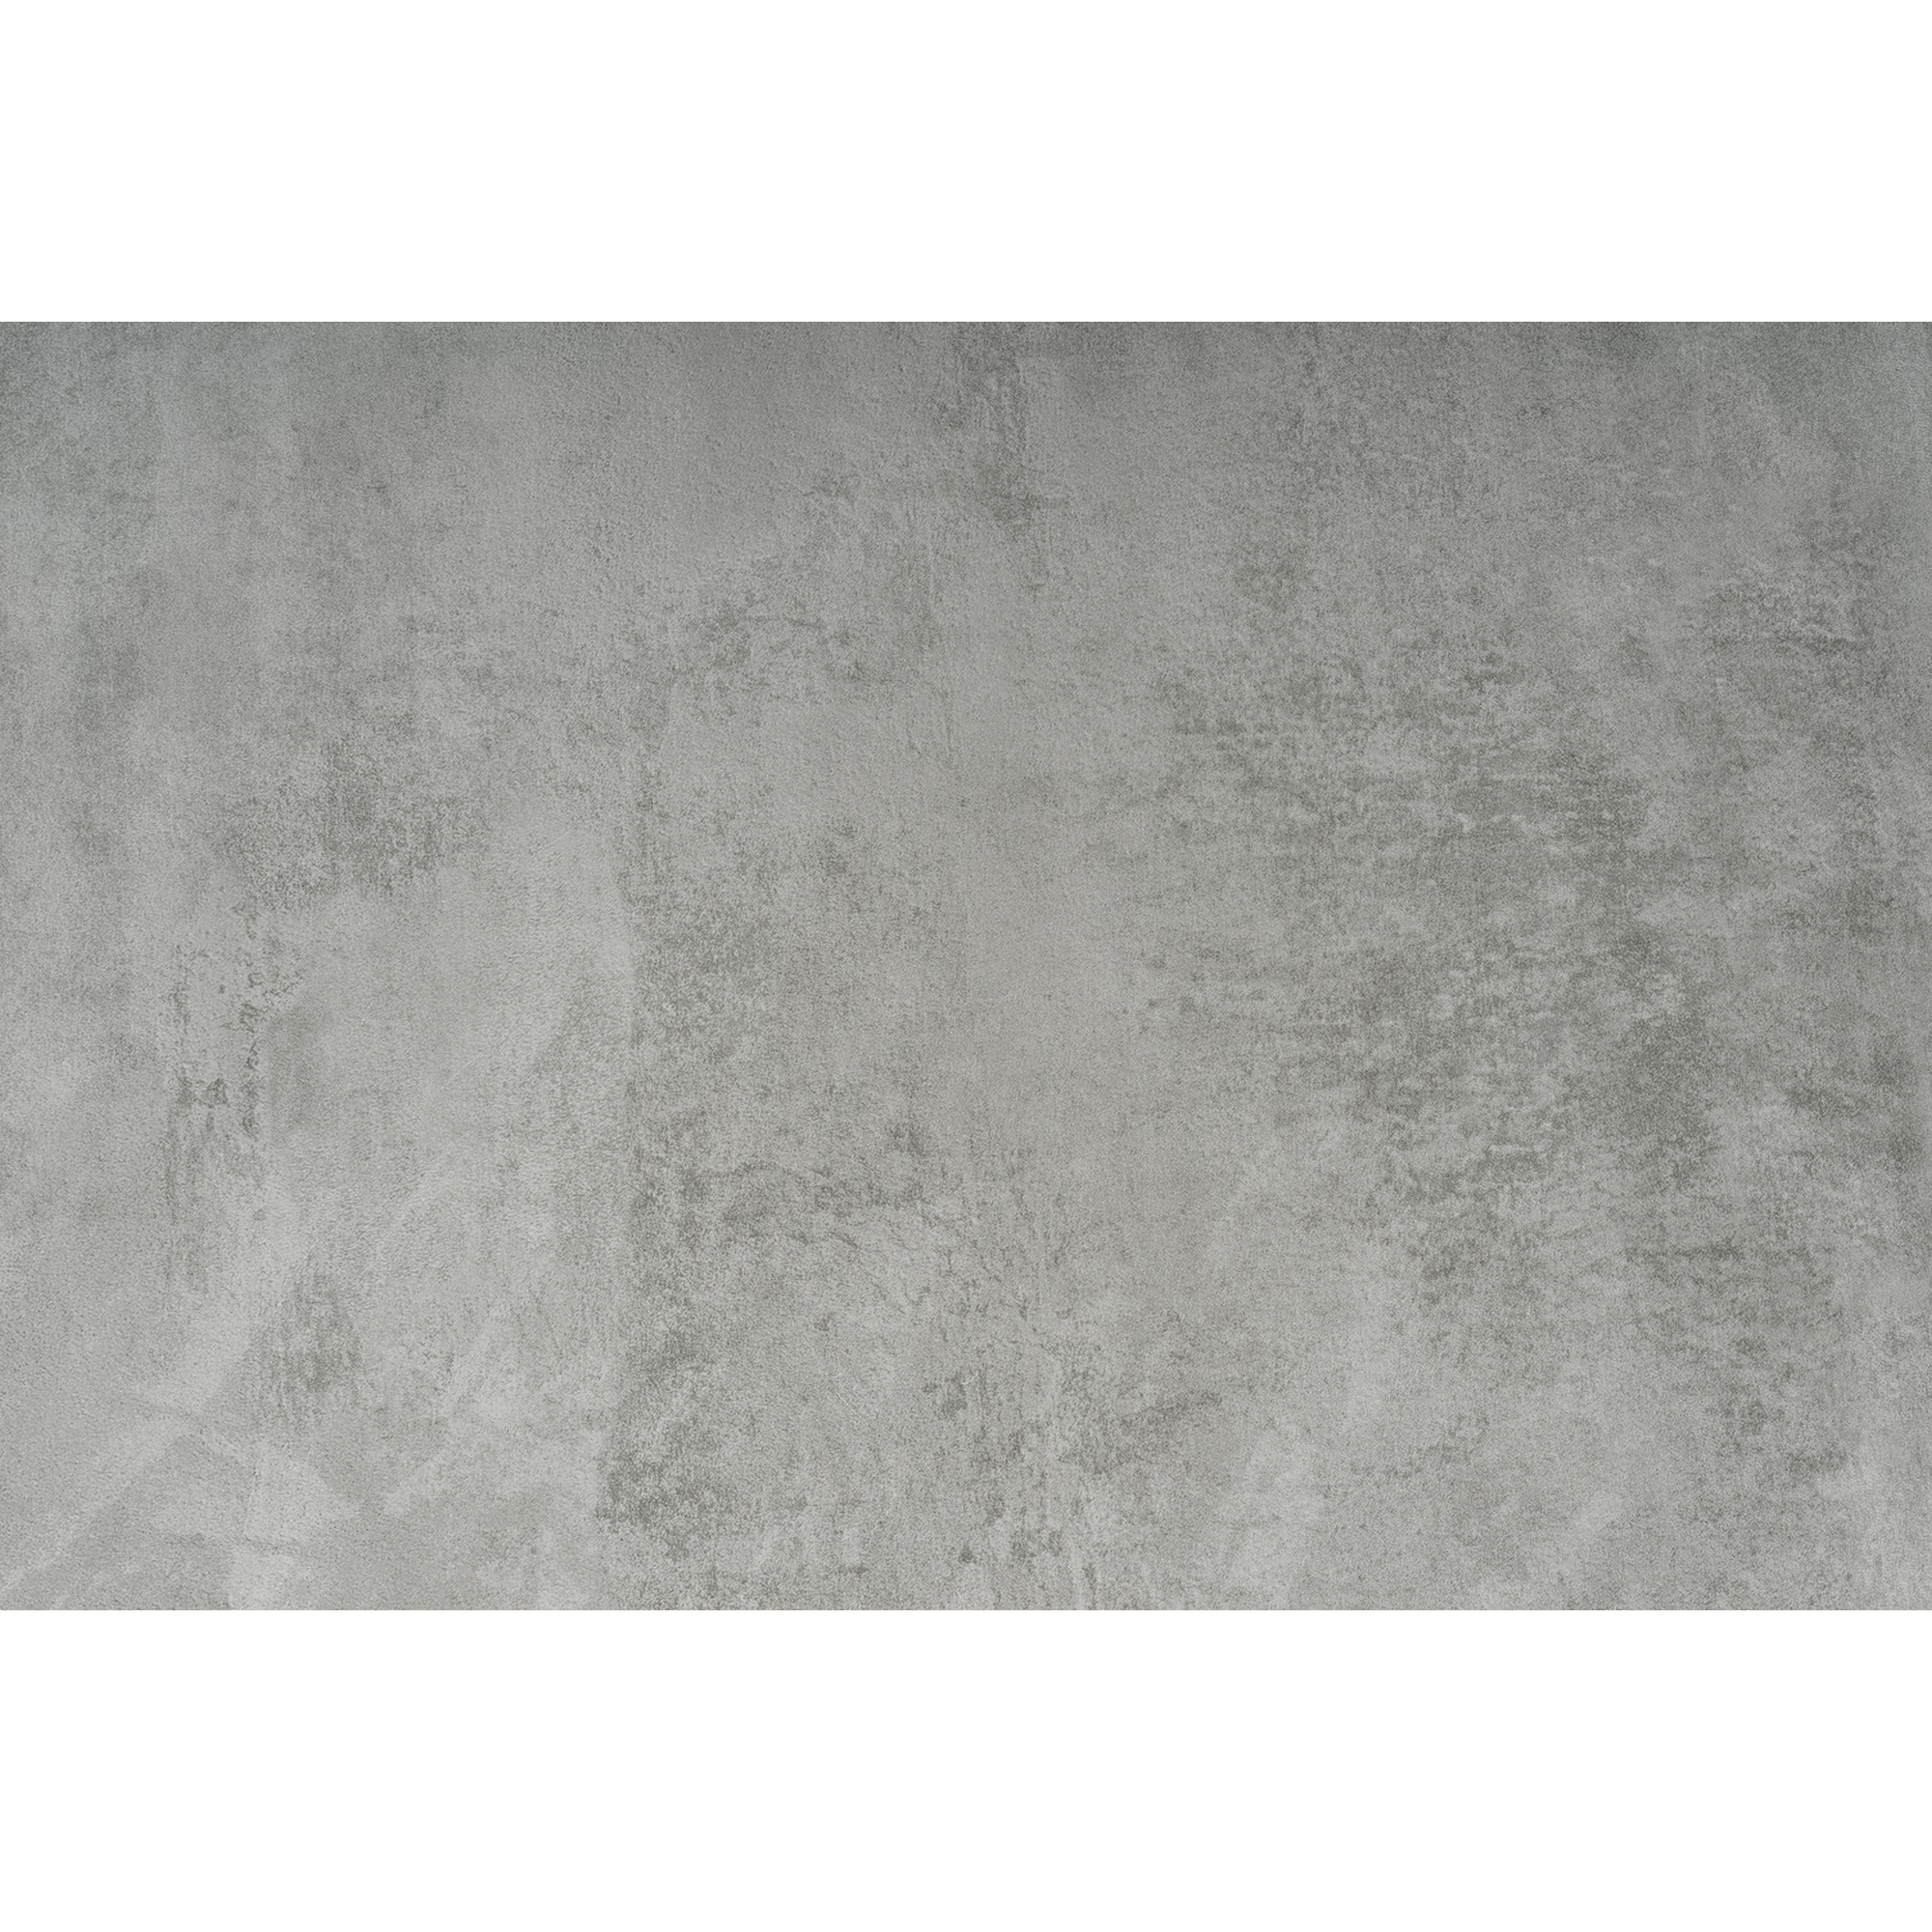 Klebefolie 'Concrete' grau Betonoptik 90 x 210 cm + product picture